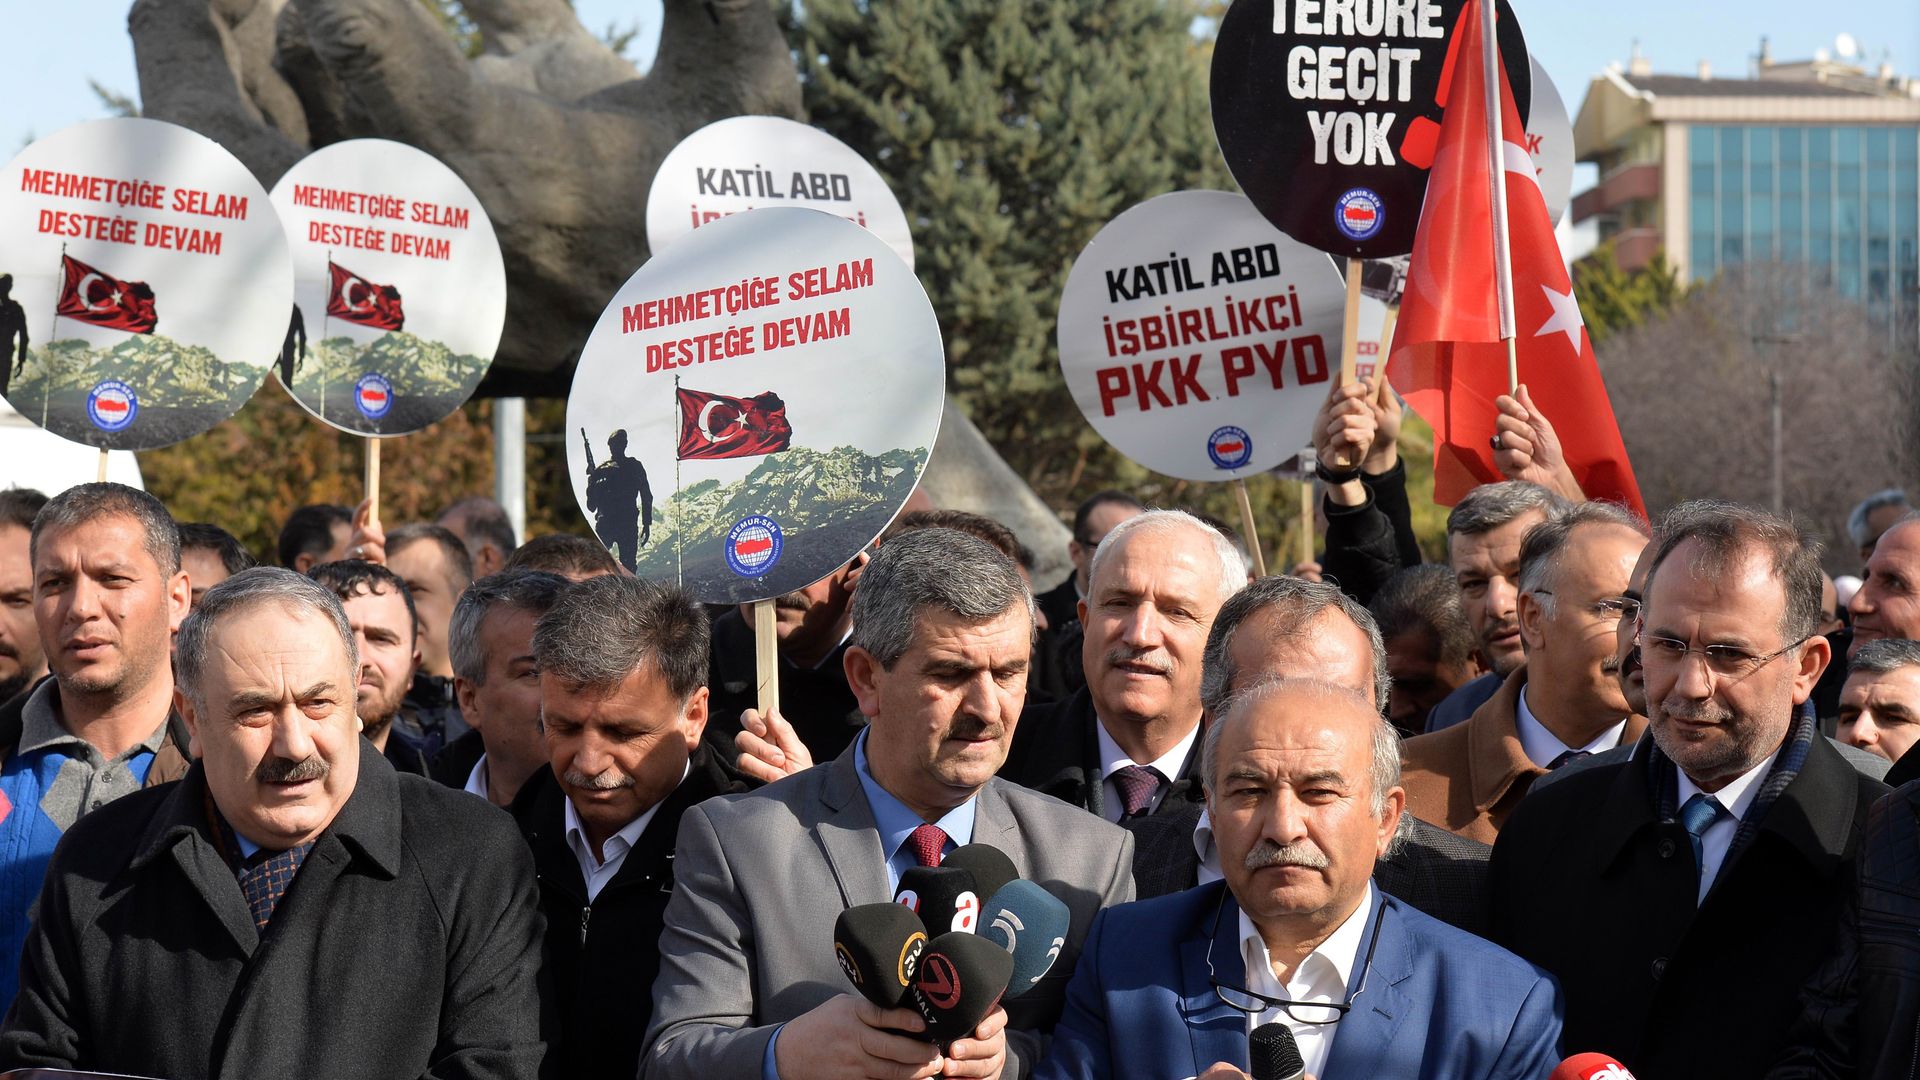 rally in Ankara